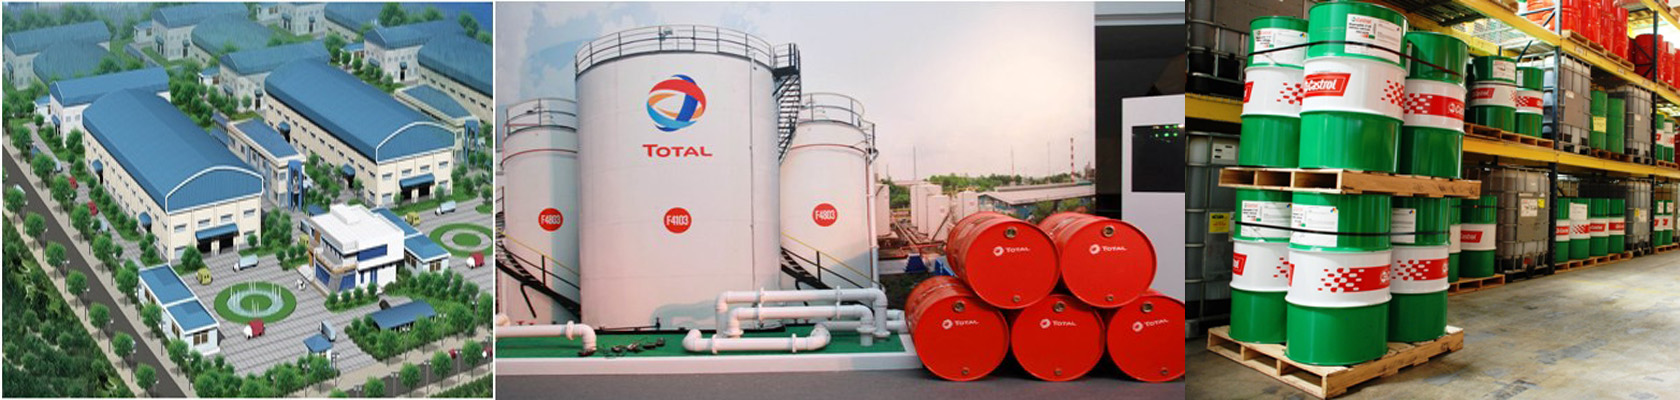 Địa chỉ mua bán dầu thủy lực Total chính hãng